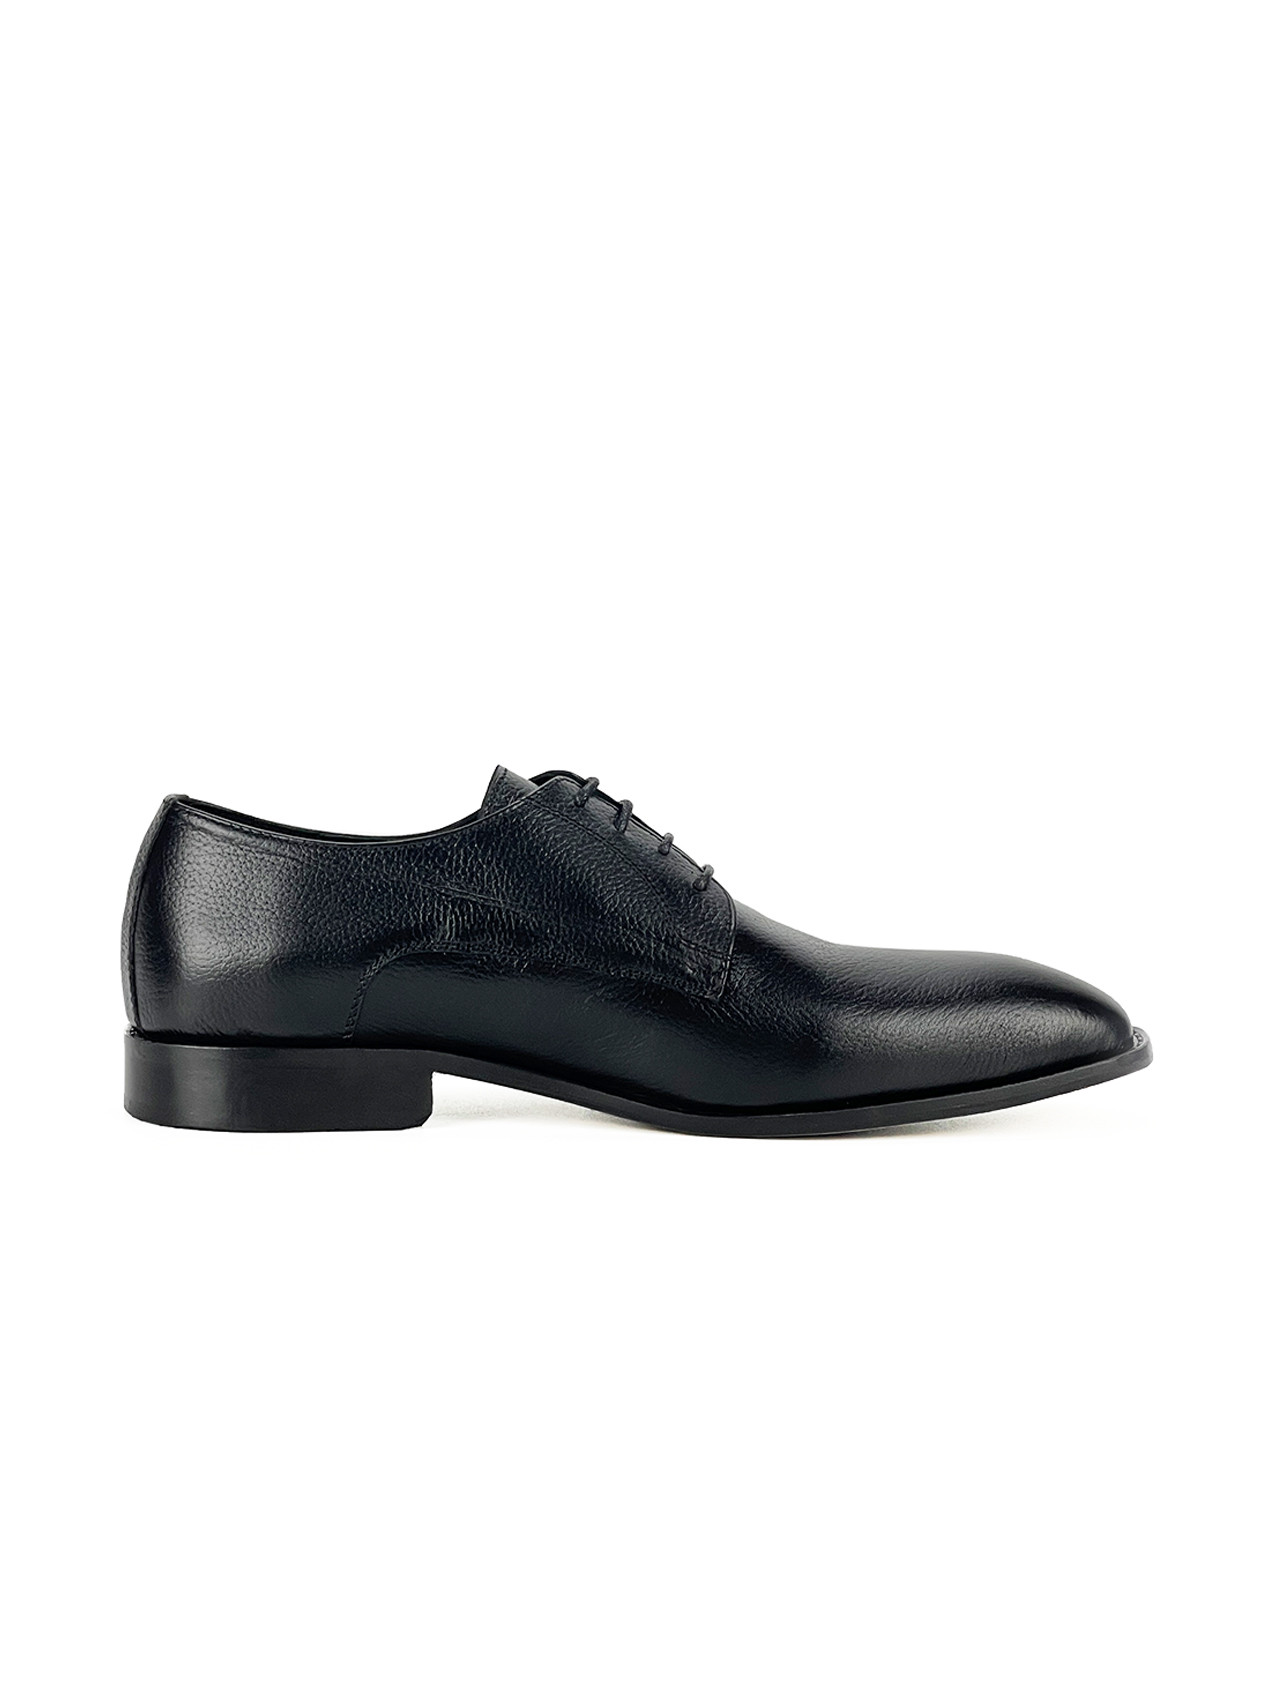 Chaussure hommes MT 100% CUIR, 44, Noir